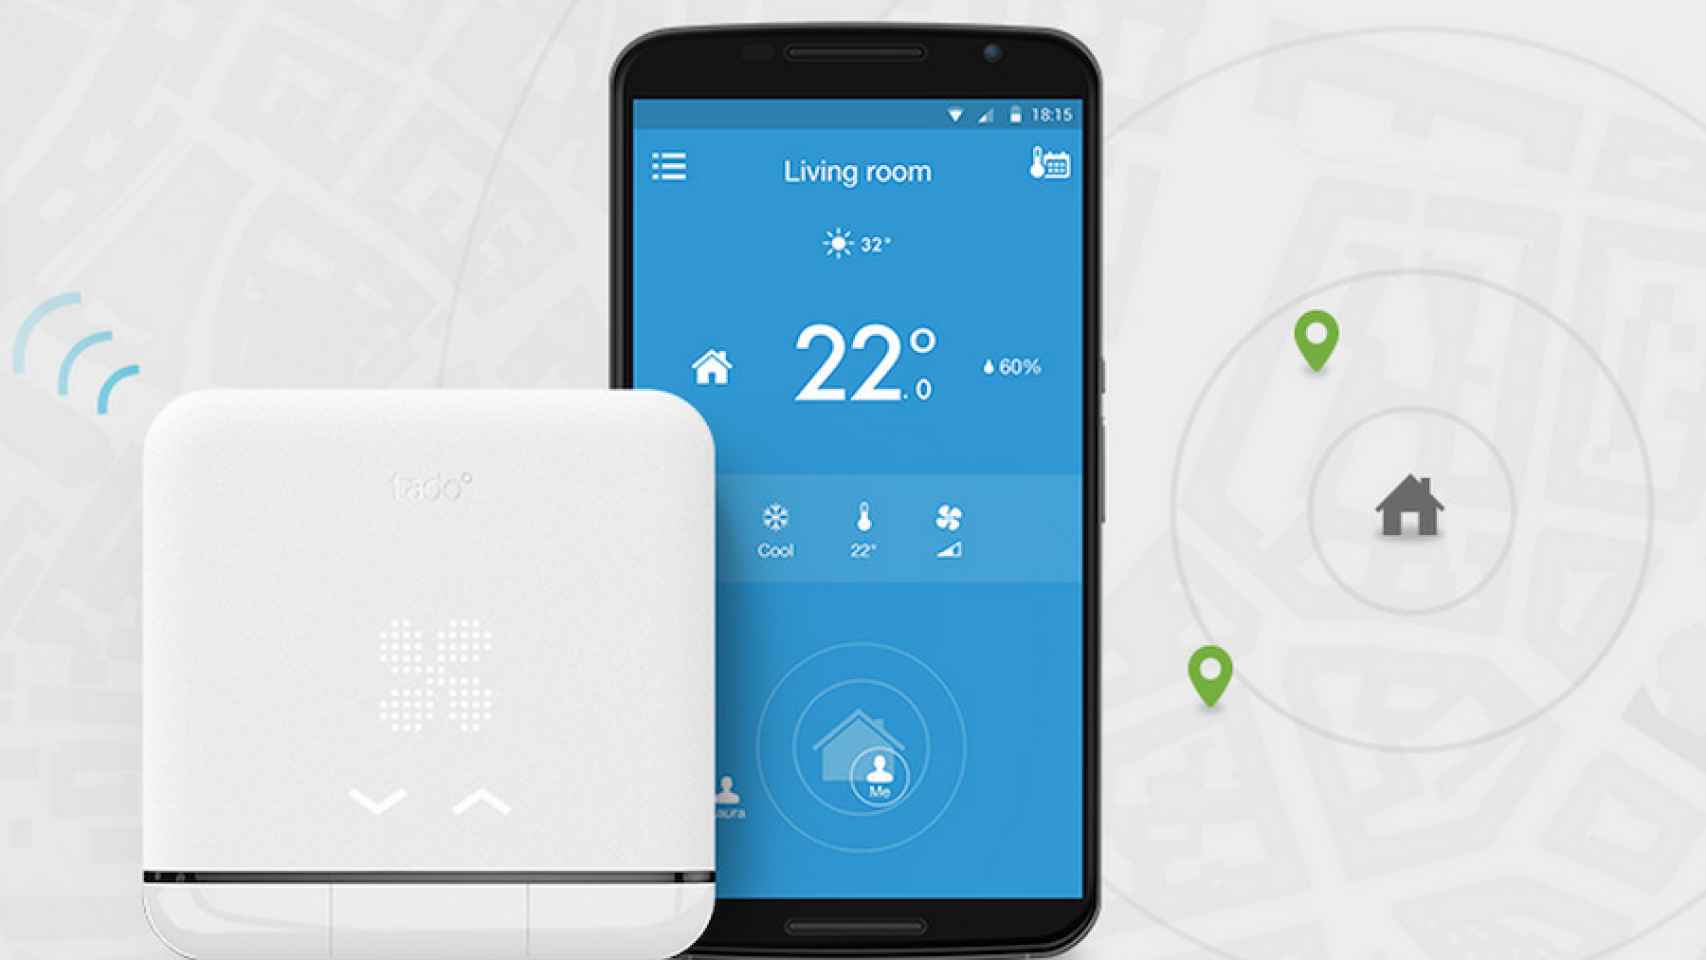 Tadoº, controla la temperatura de tu hogar desde el móvil